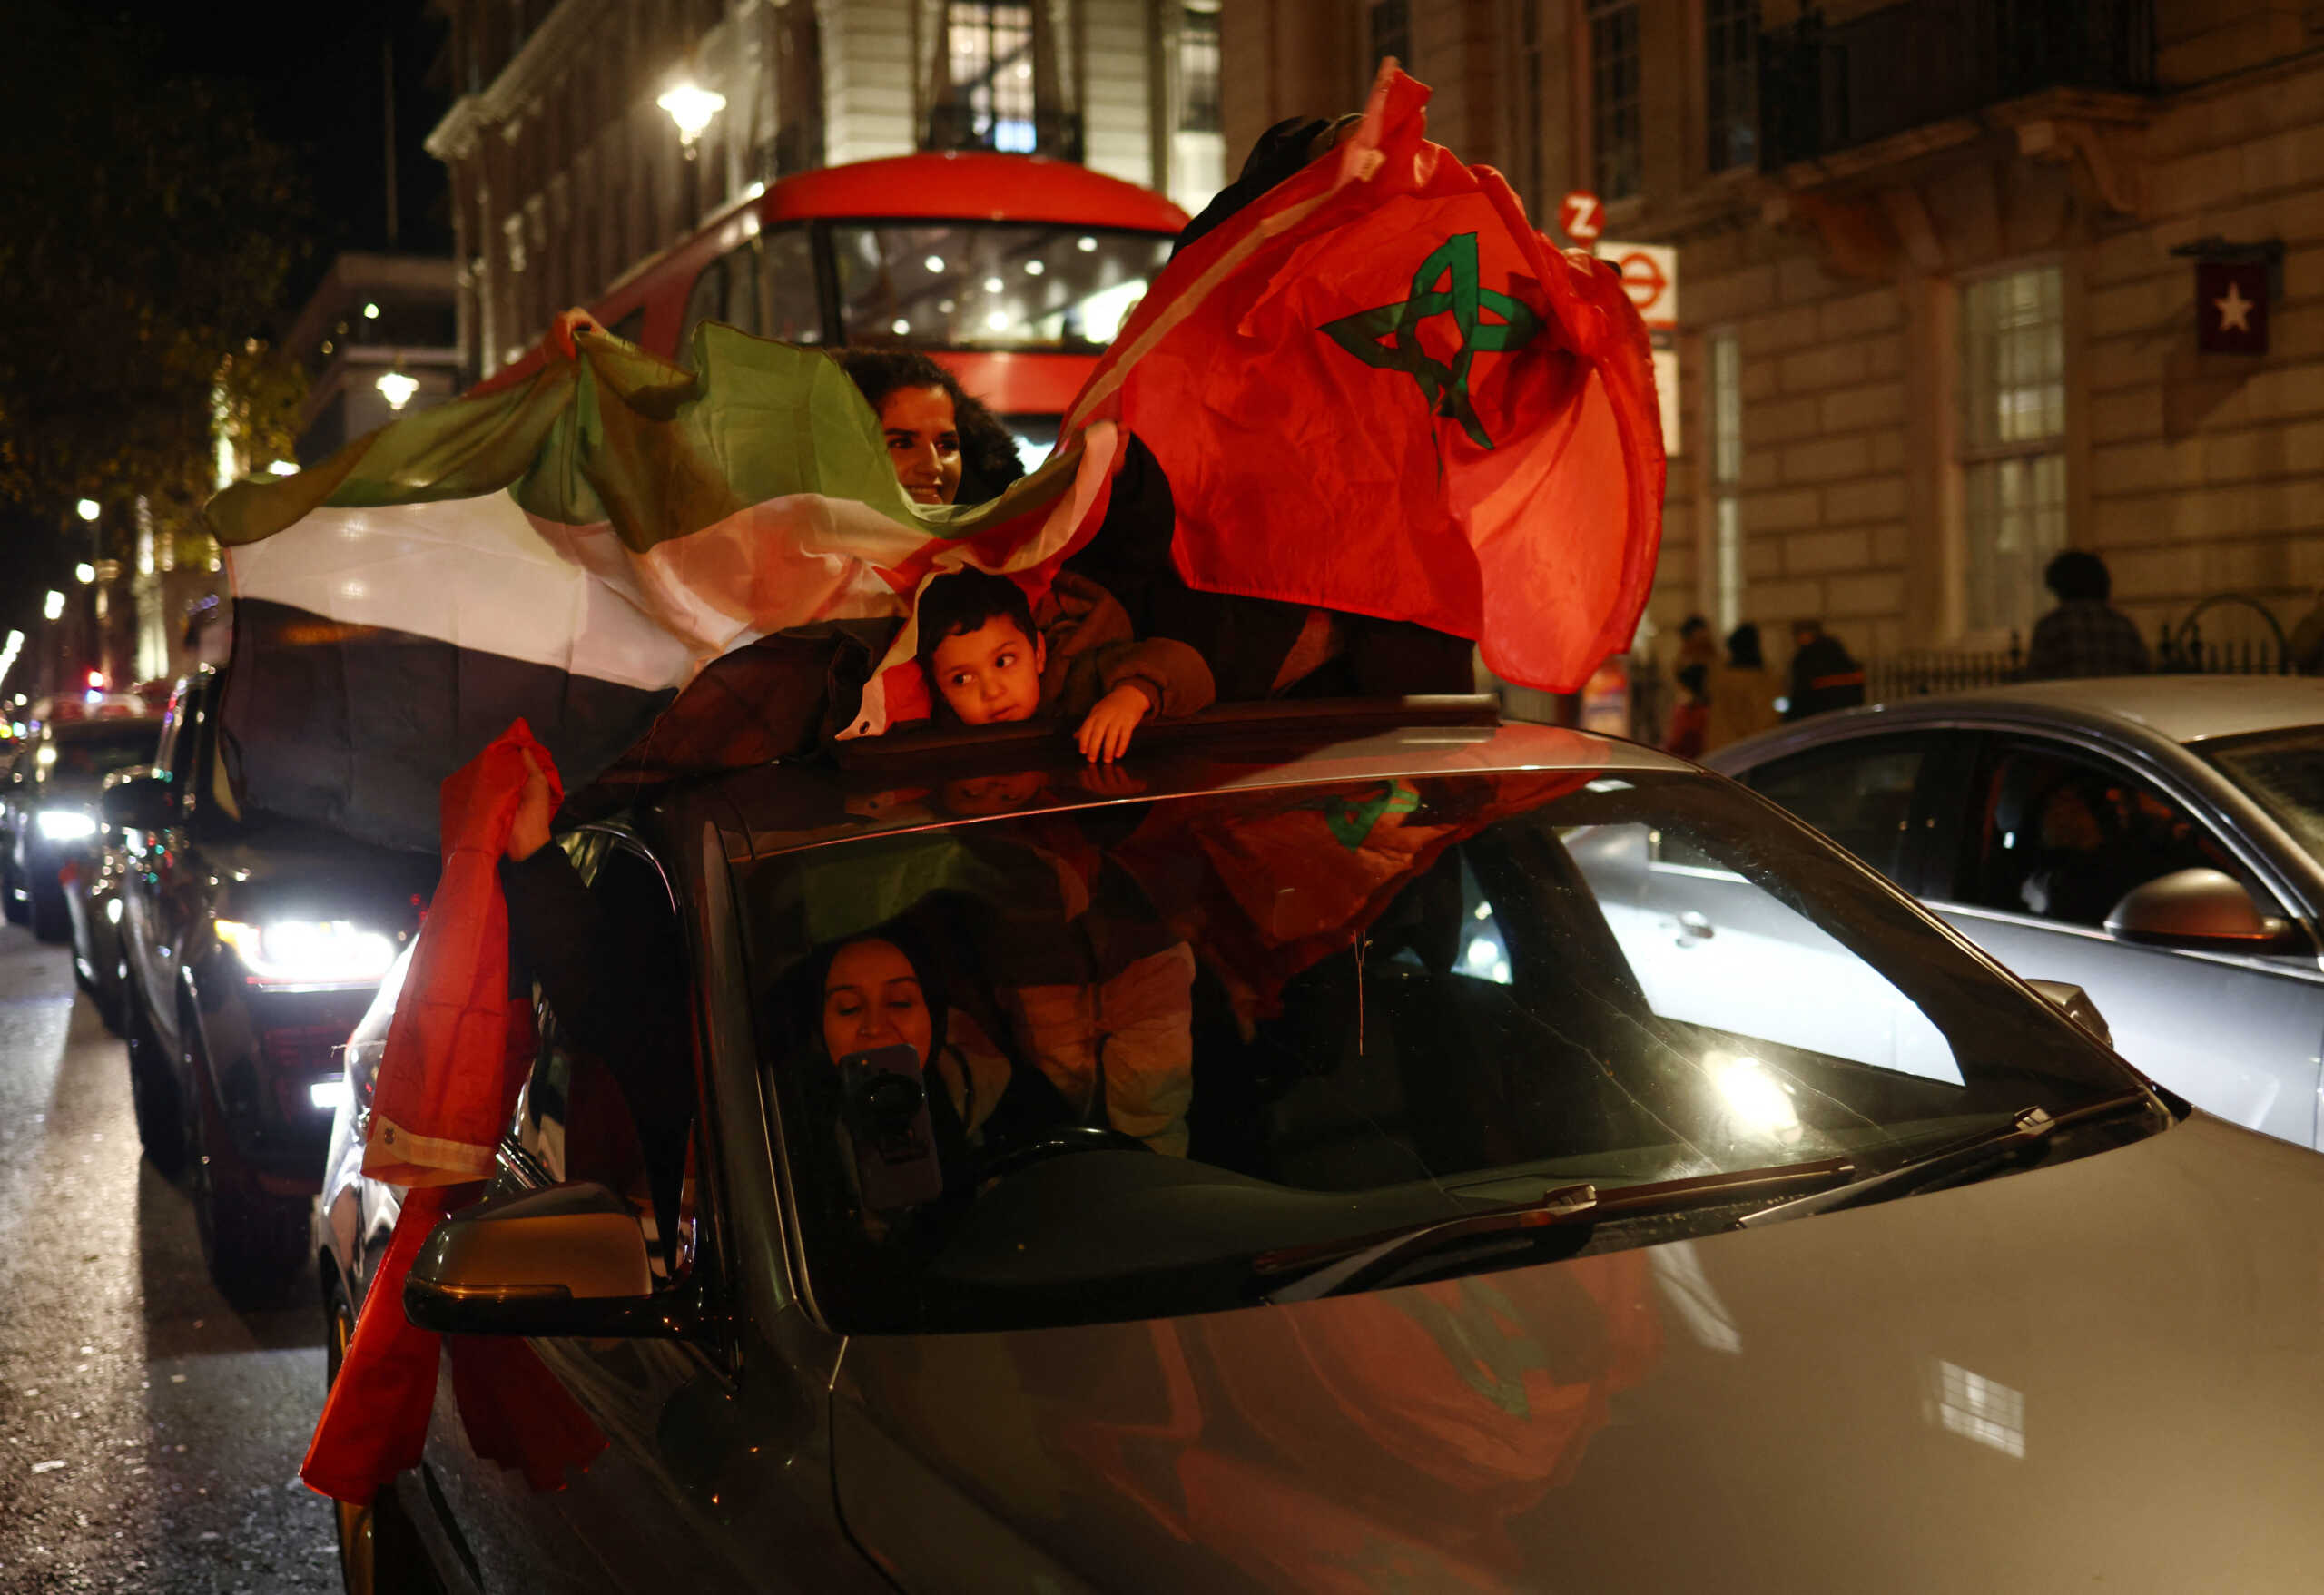 Μουντιάλ 2022: Έξαλλοι πανηγυρισμοί αλλά και επεισόδια από Μαροκινούς σε όλο τον κόσμο – Μαχαιρώθηκε φίλαθλος στο Μιλάνο